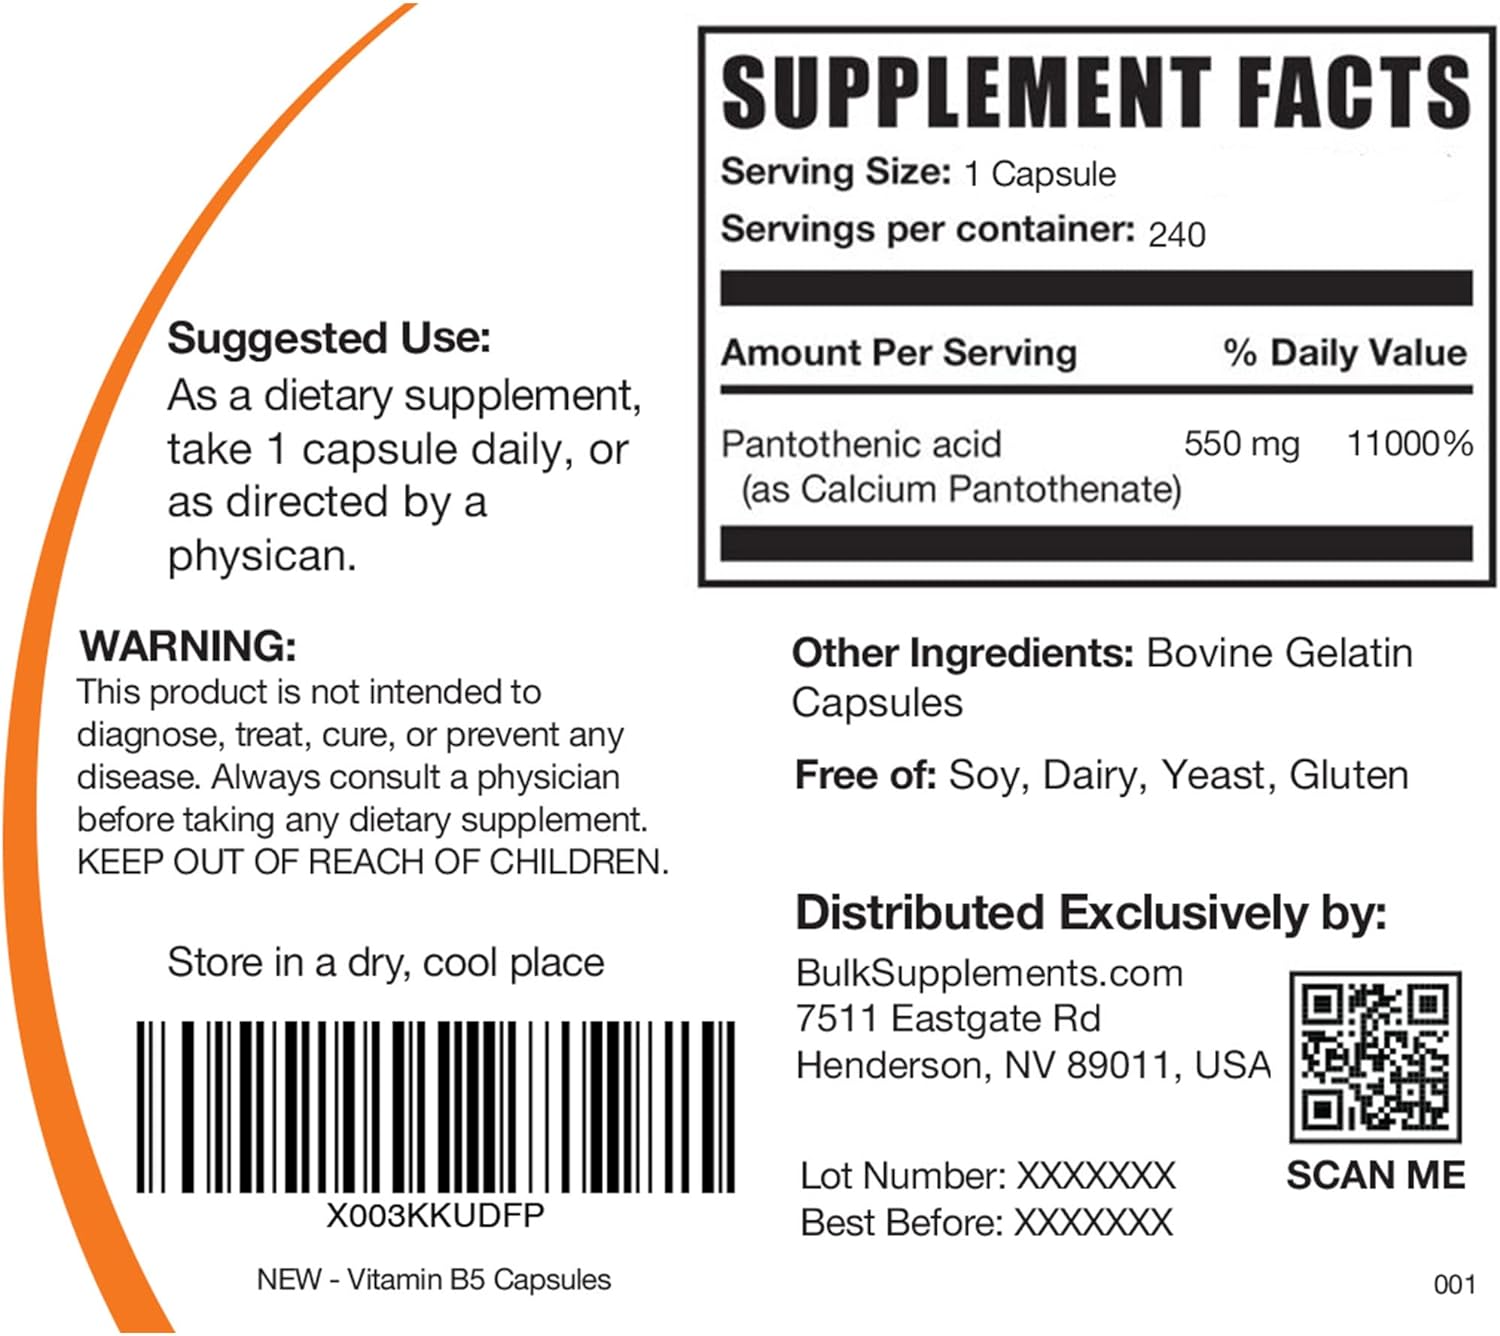 BULKSUPPLEMENTS.COM Vitamin B5 Capsules - Vitamin B Supplement - Pantothenic Acid 500mg - B5 Vitamins - Vitamin B5 Pantothenic Acid - 1 Capsule per Serving, 240-Day Supply (240 Capsules)